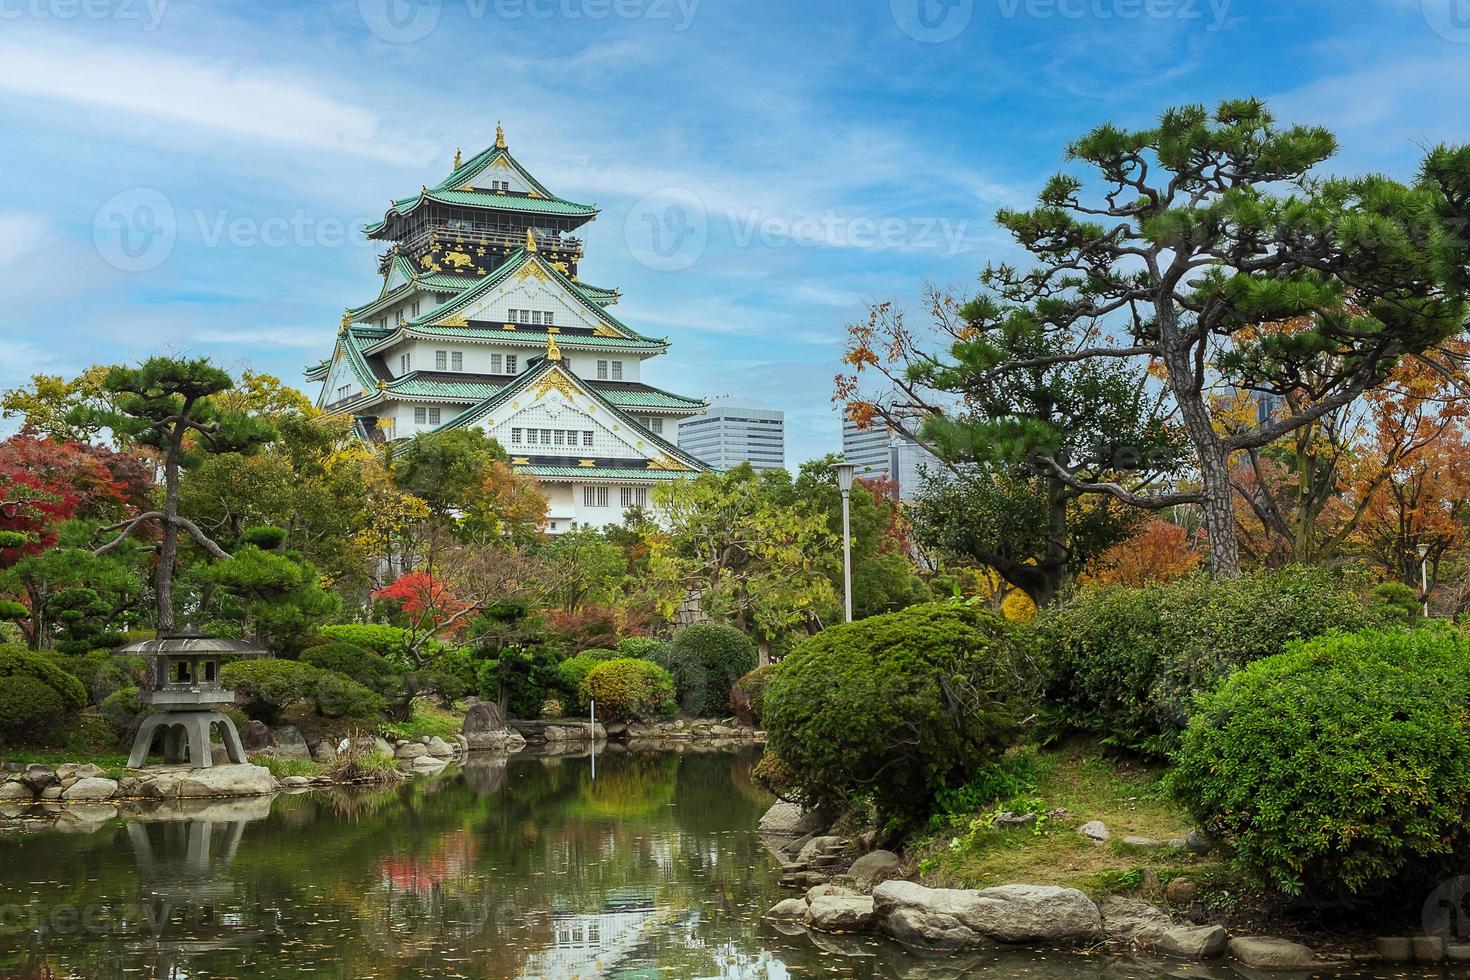 osaka slott under höstens lövverk säsong, är ett berömt japanskt slott, landmärke och populärt för turistattraktioner i osaka, kansai, japan foto